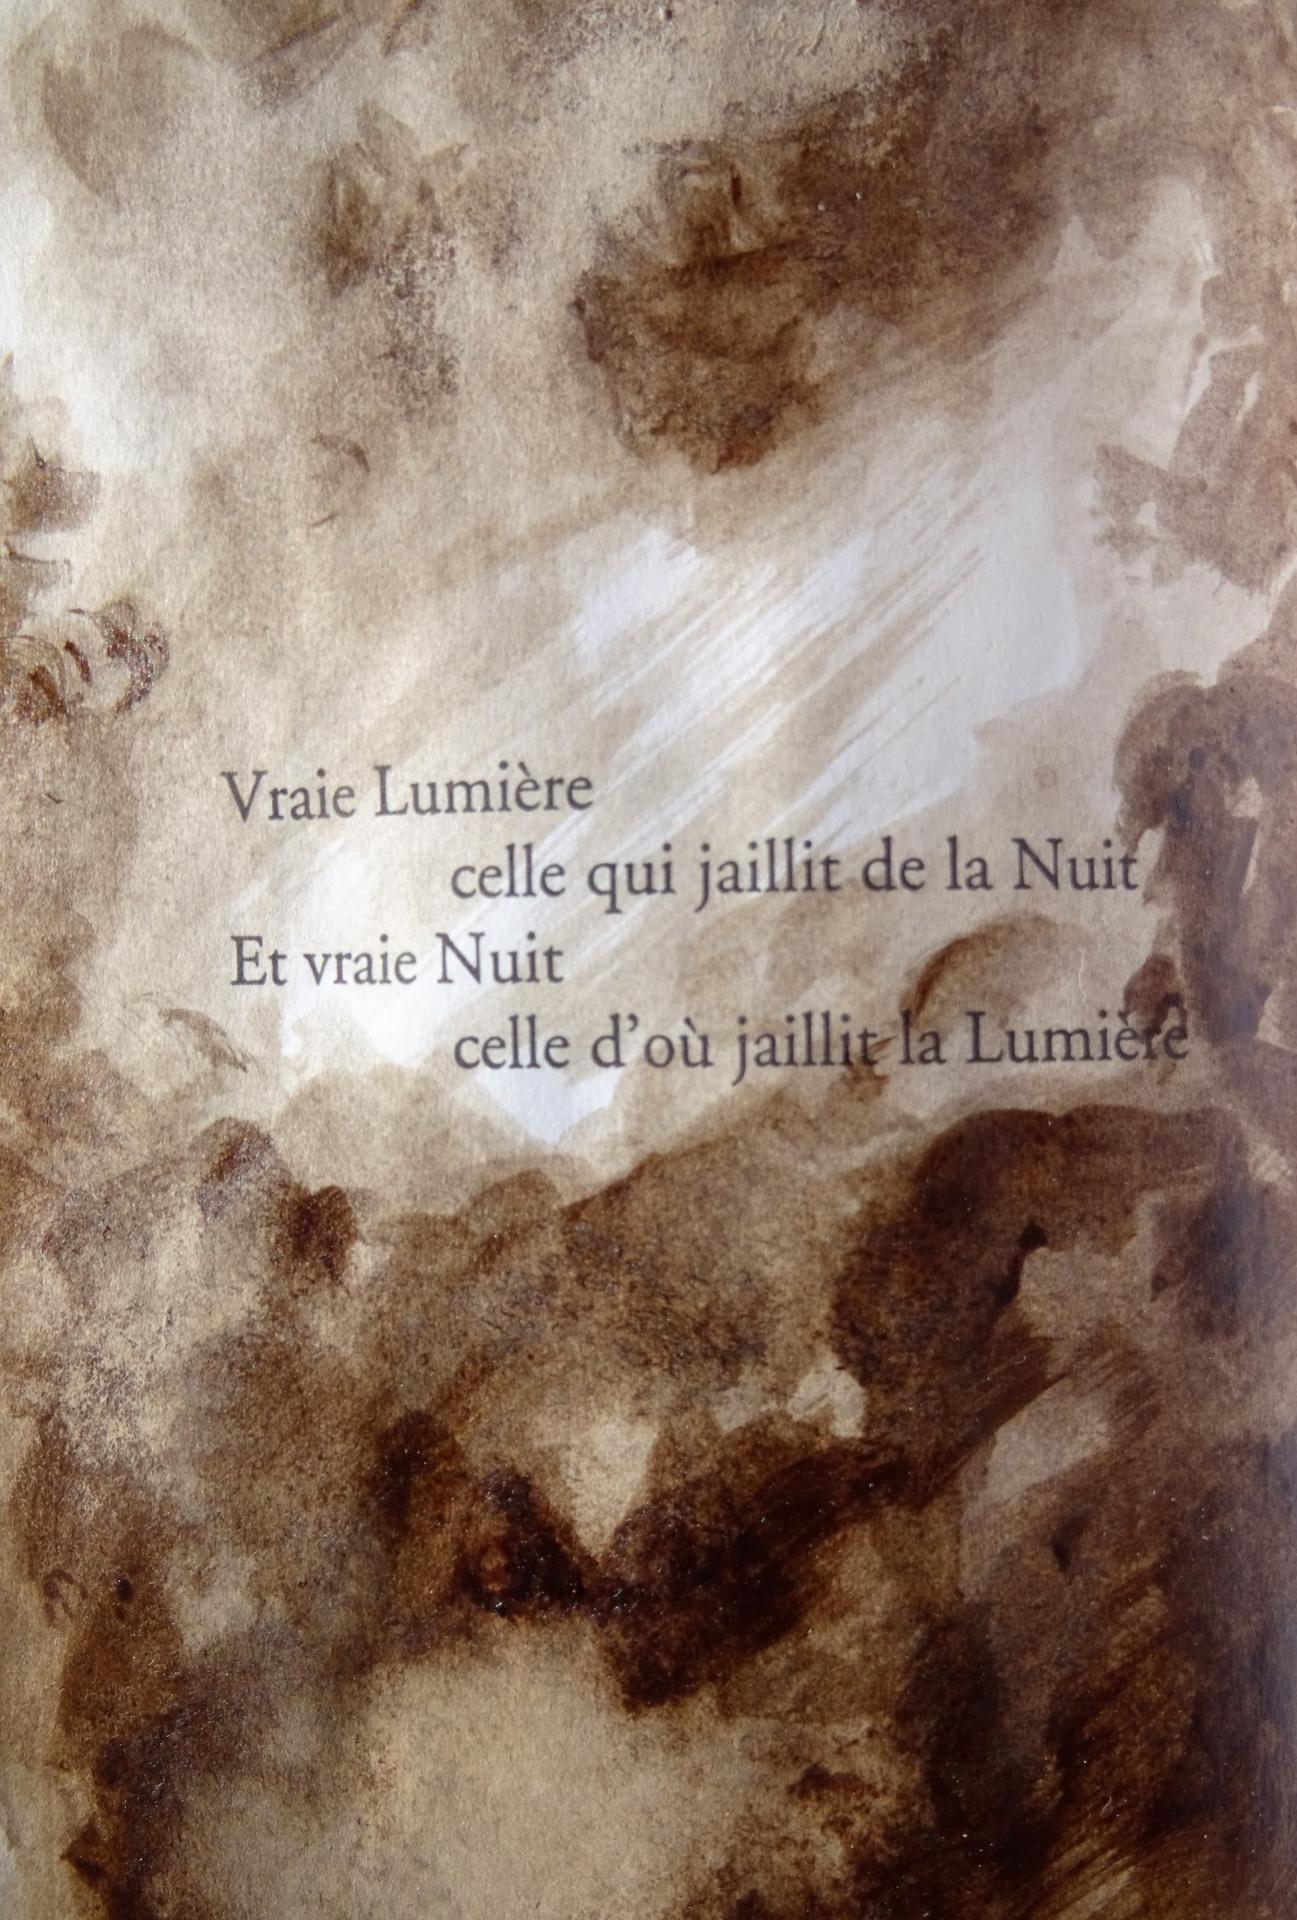 Poeme de francois cheng illustre dessin au lavis de jean joseph chevalier 167